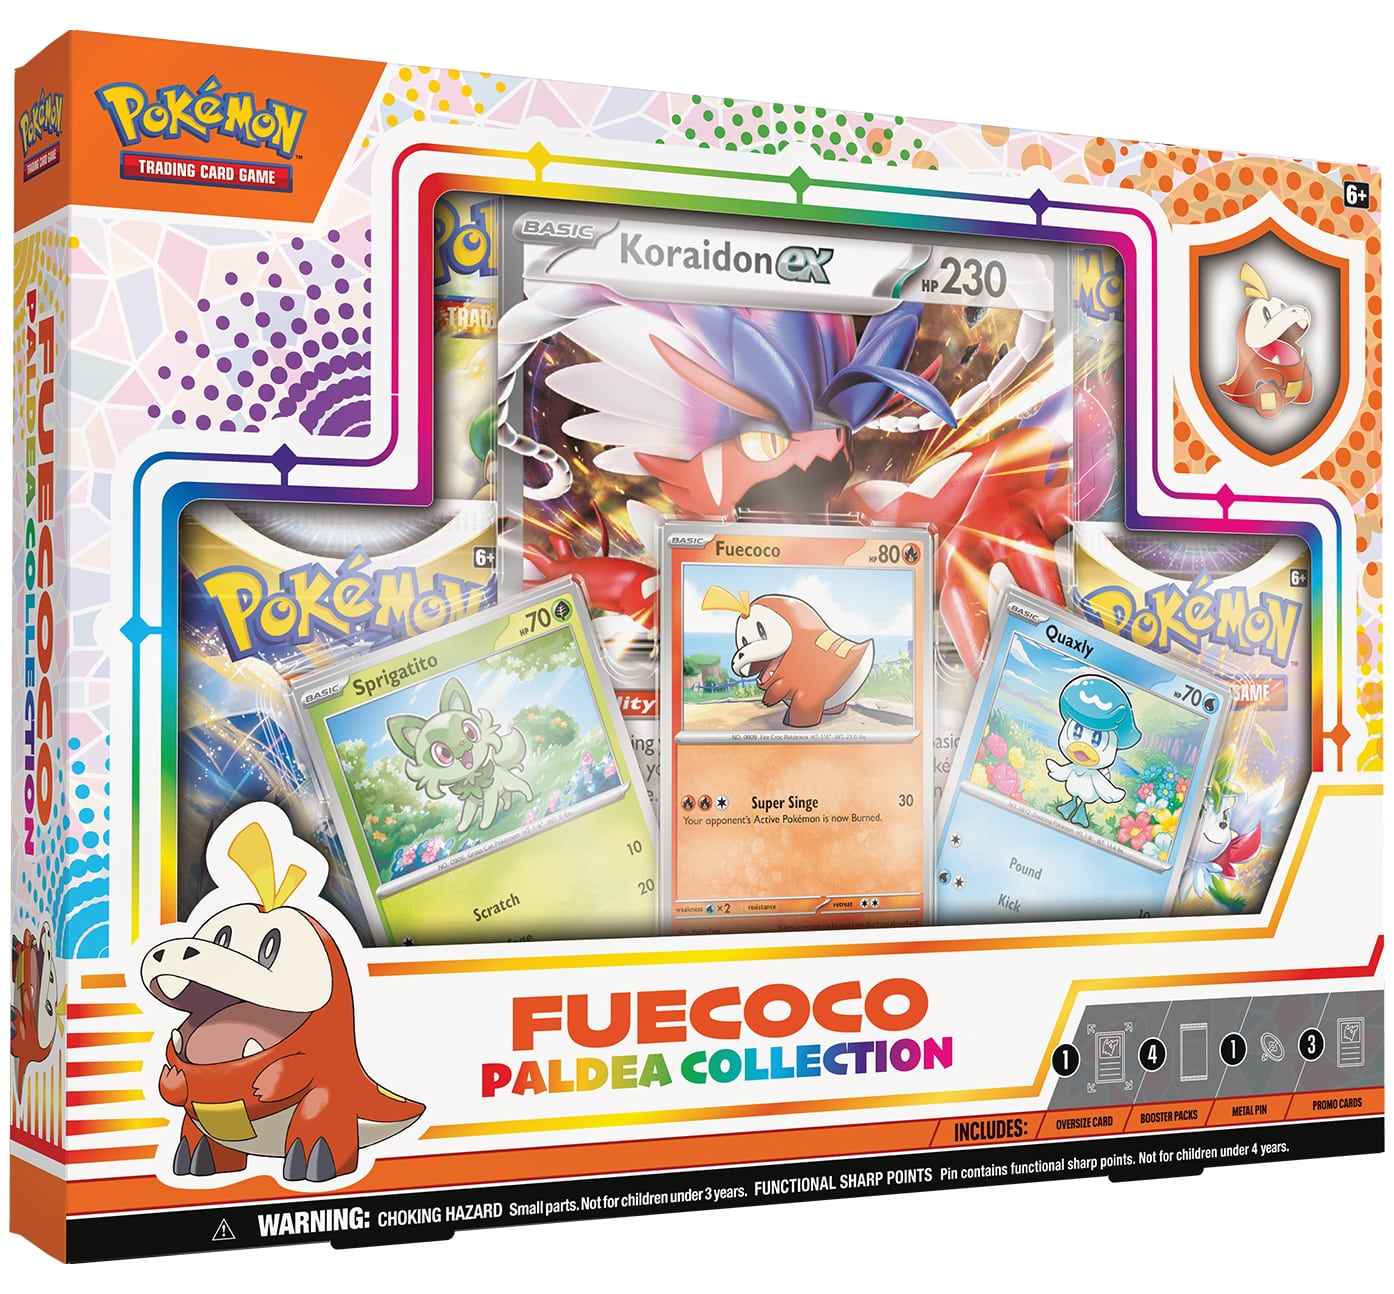 Pokémon Fuecoco Paldea Collection Box - EN